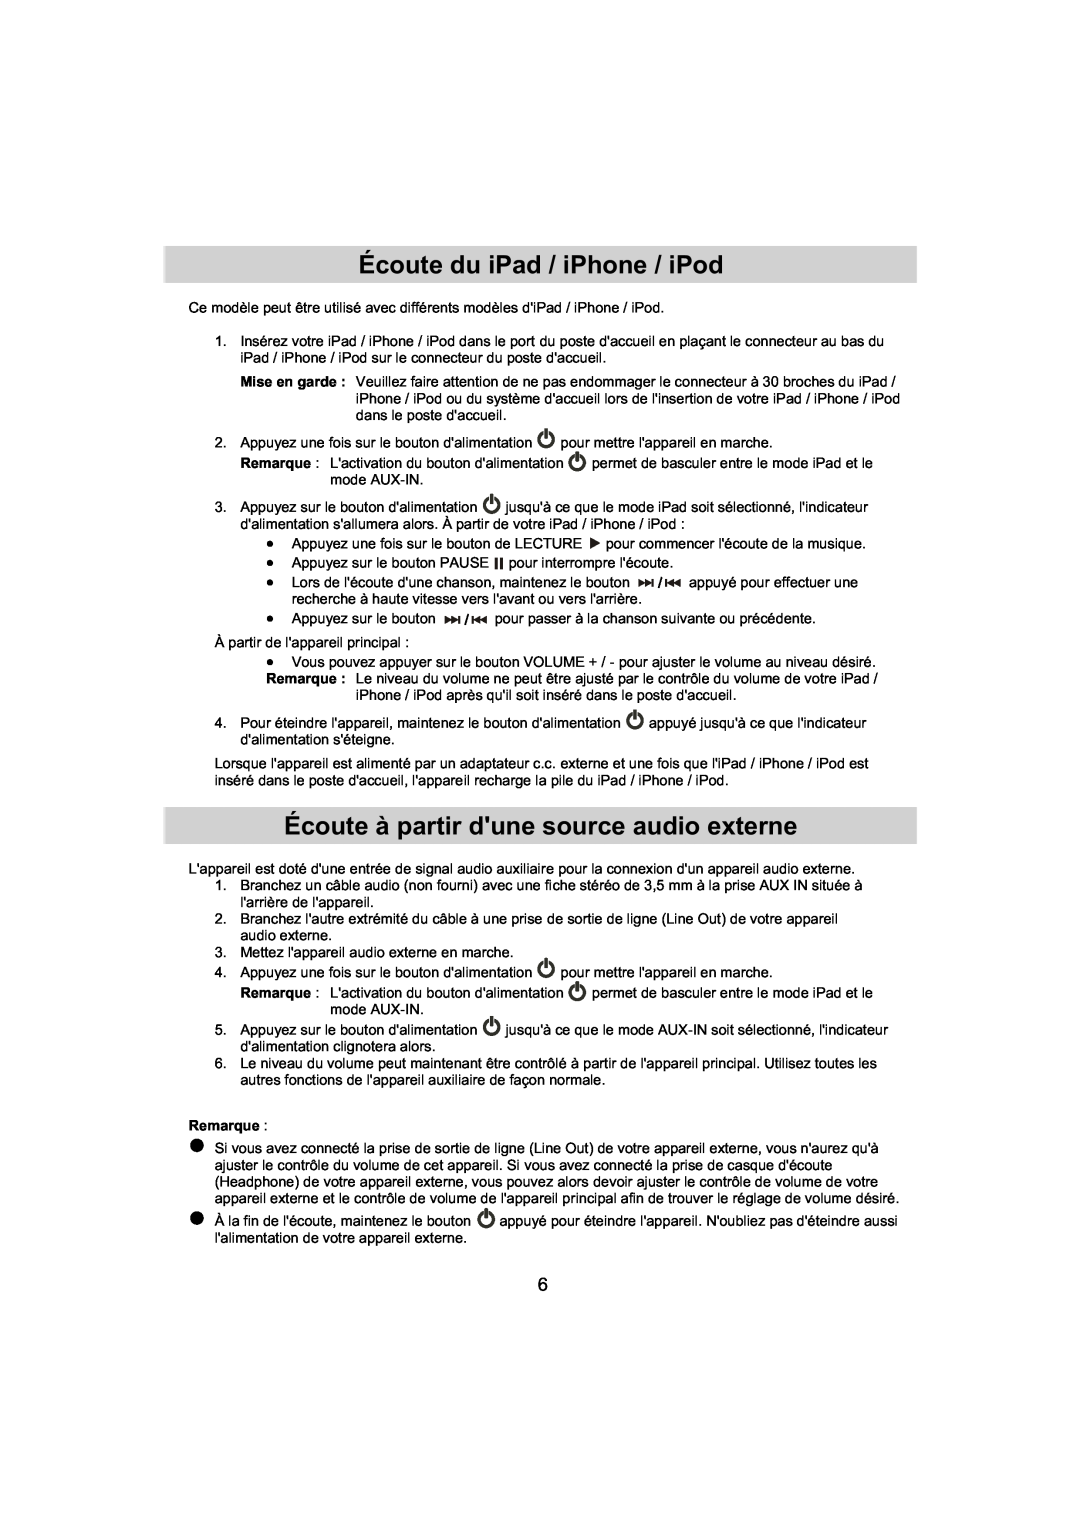 Haier IPD-01 manual Écoute du iPad / iPhone / iPod, Écoute à partir dune source audio externe, Remarque 